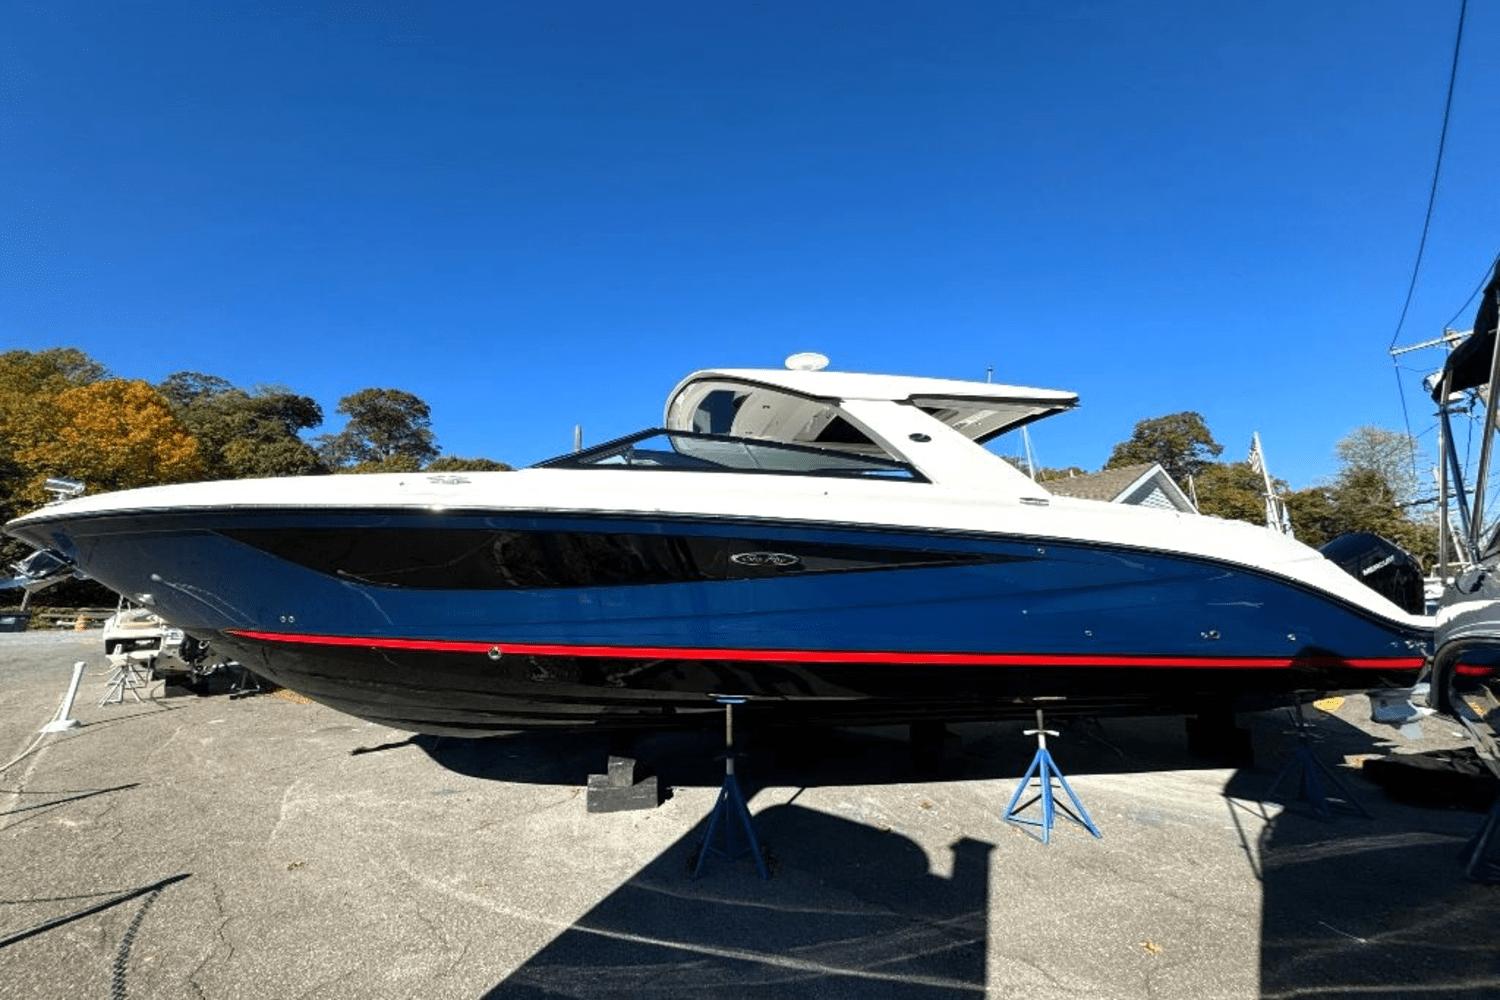 2024 Dynamic 53 Freya Power Catamaran for sale - YachtWorld